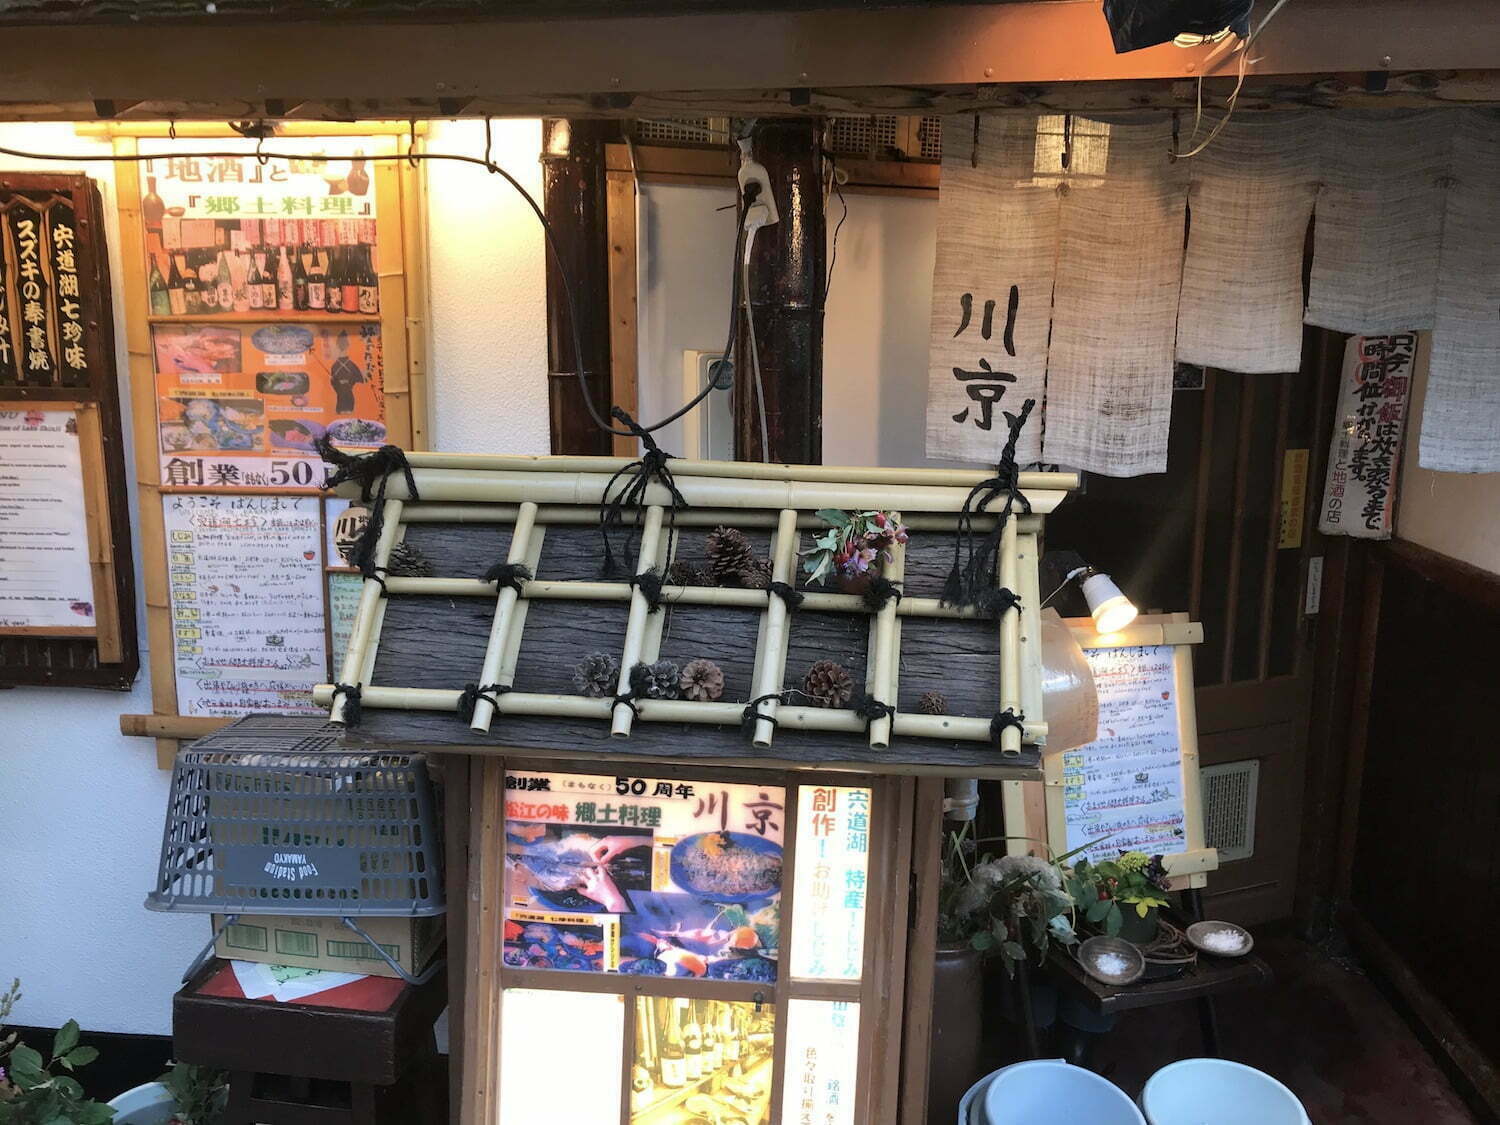 Restaurant "KawaKyo" at Matsue City